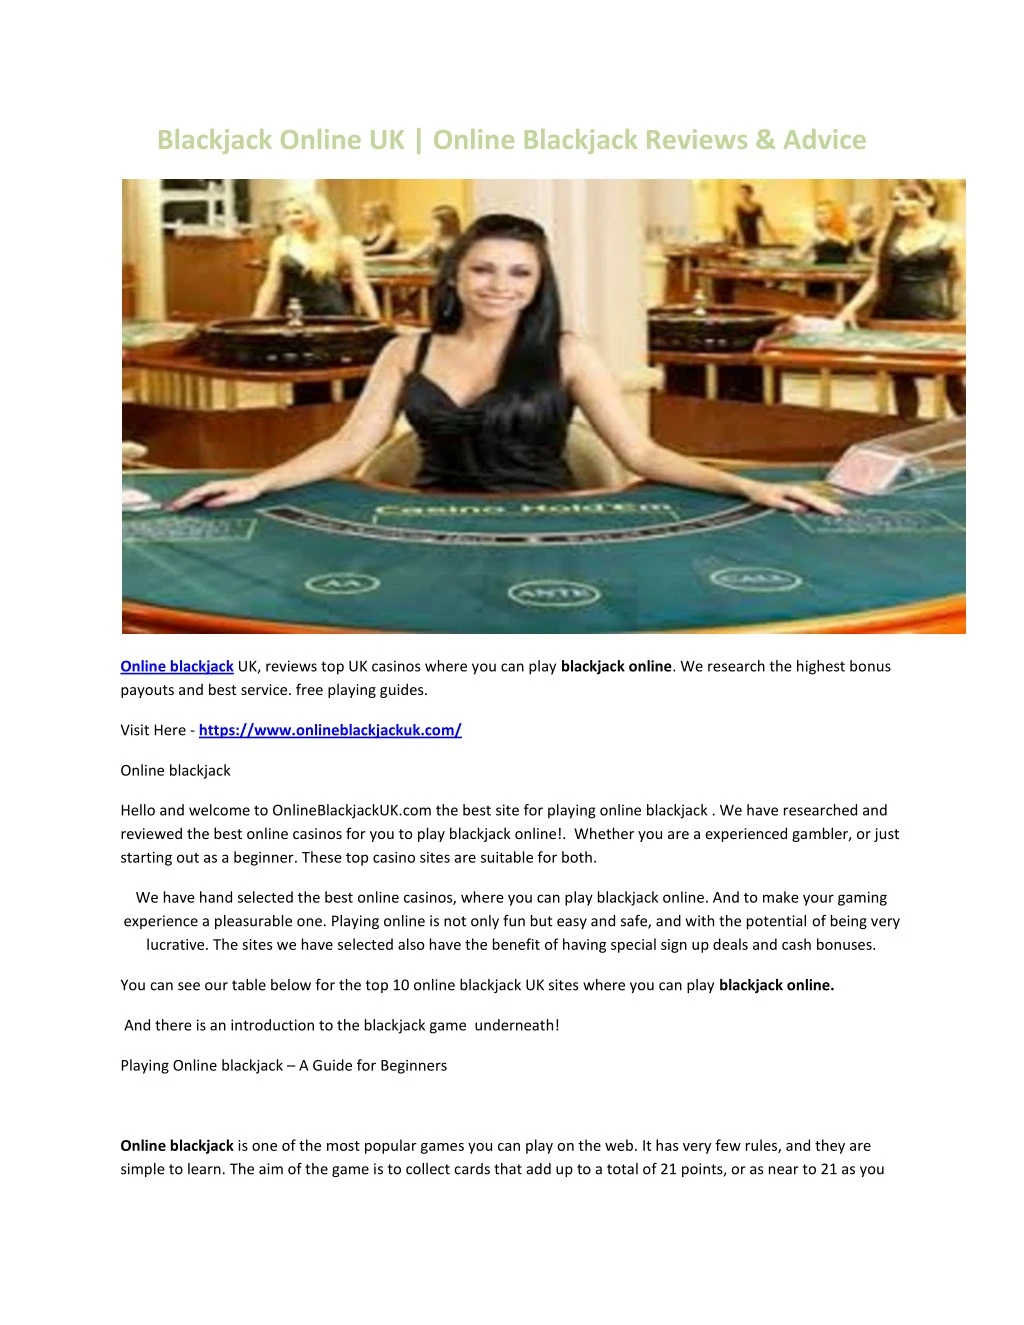 blackjack online uk online blackjack reviews